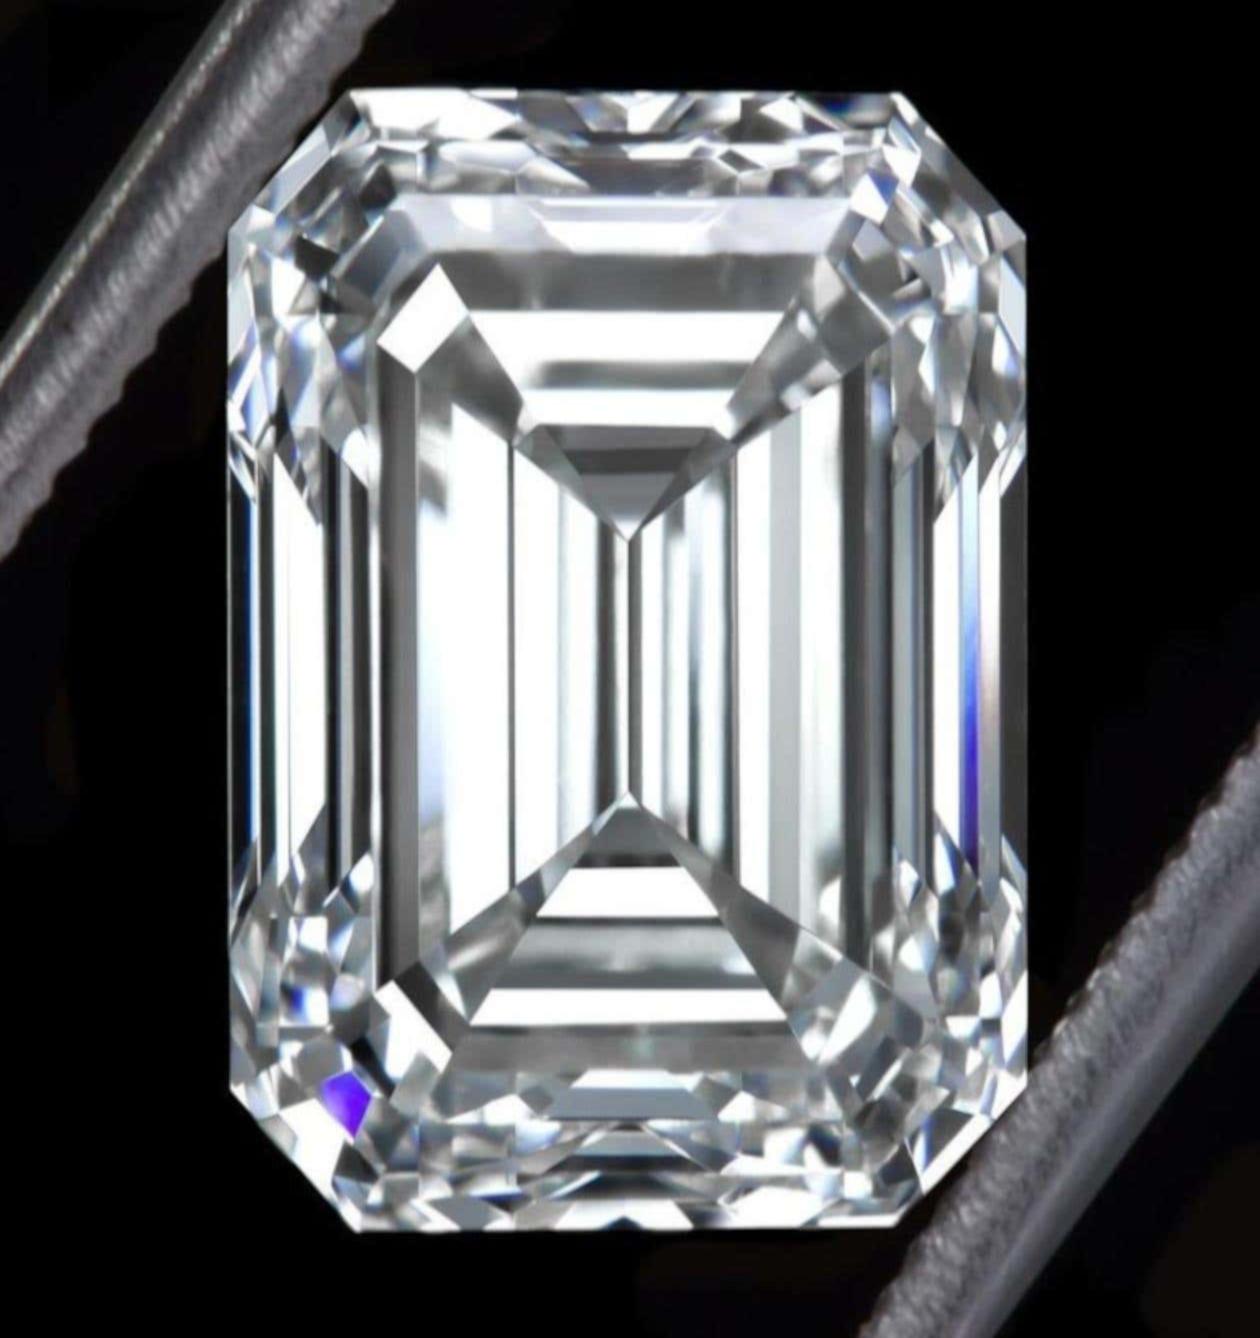 Fantastique bague en or blanc 18 carats, diamant taille émeraude de 2,20 carats.
La pierre principale, qui pèse 2,20 carats, a été certifiée par la GIA et présente une couleur D et une pureté VVS1.
